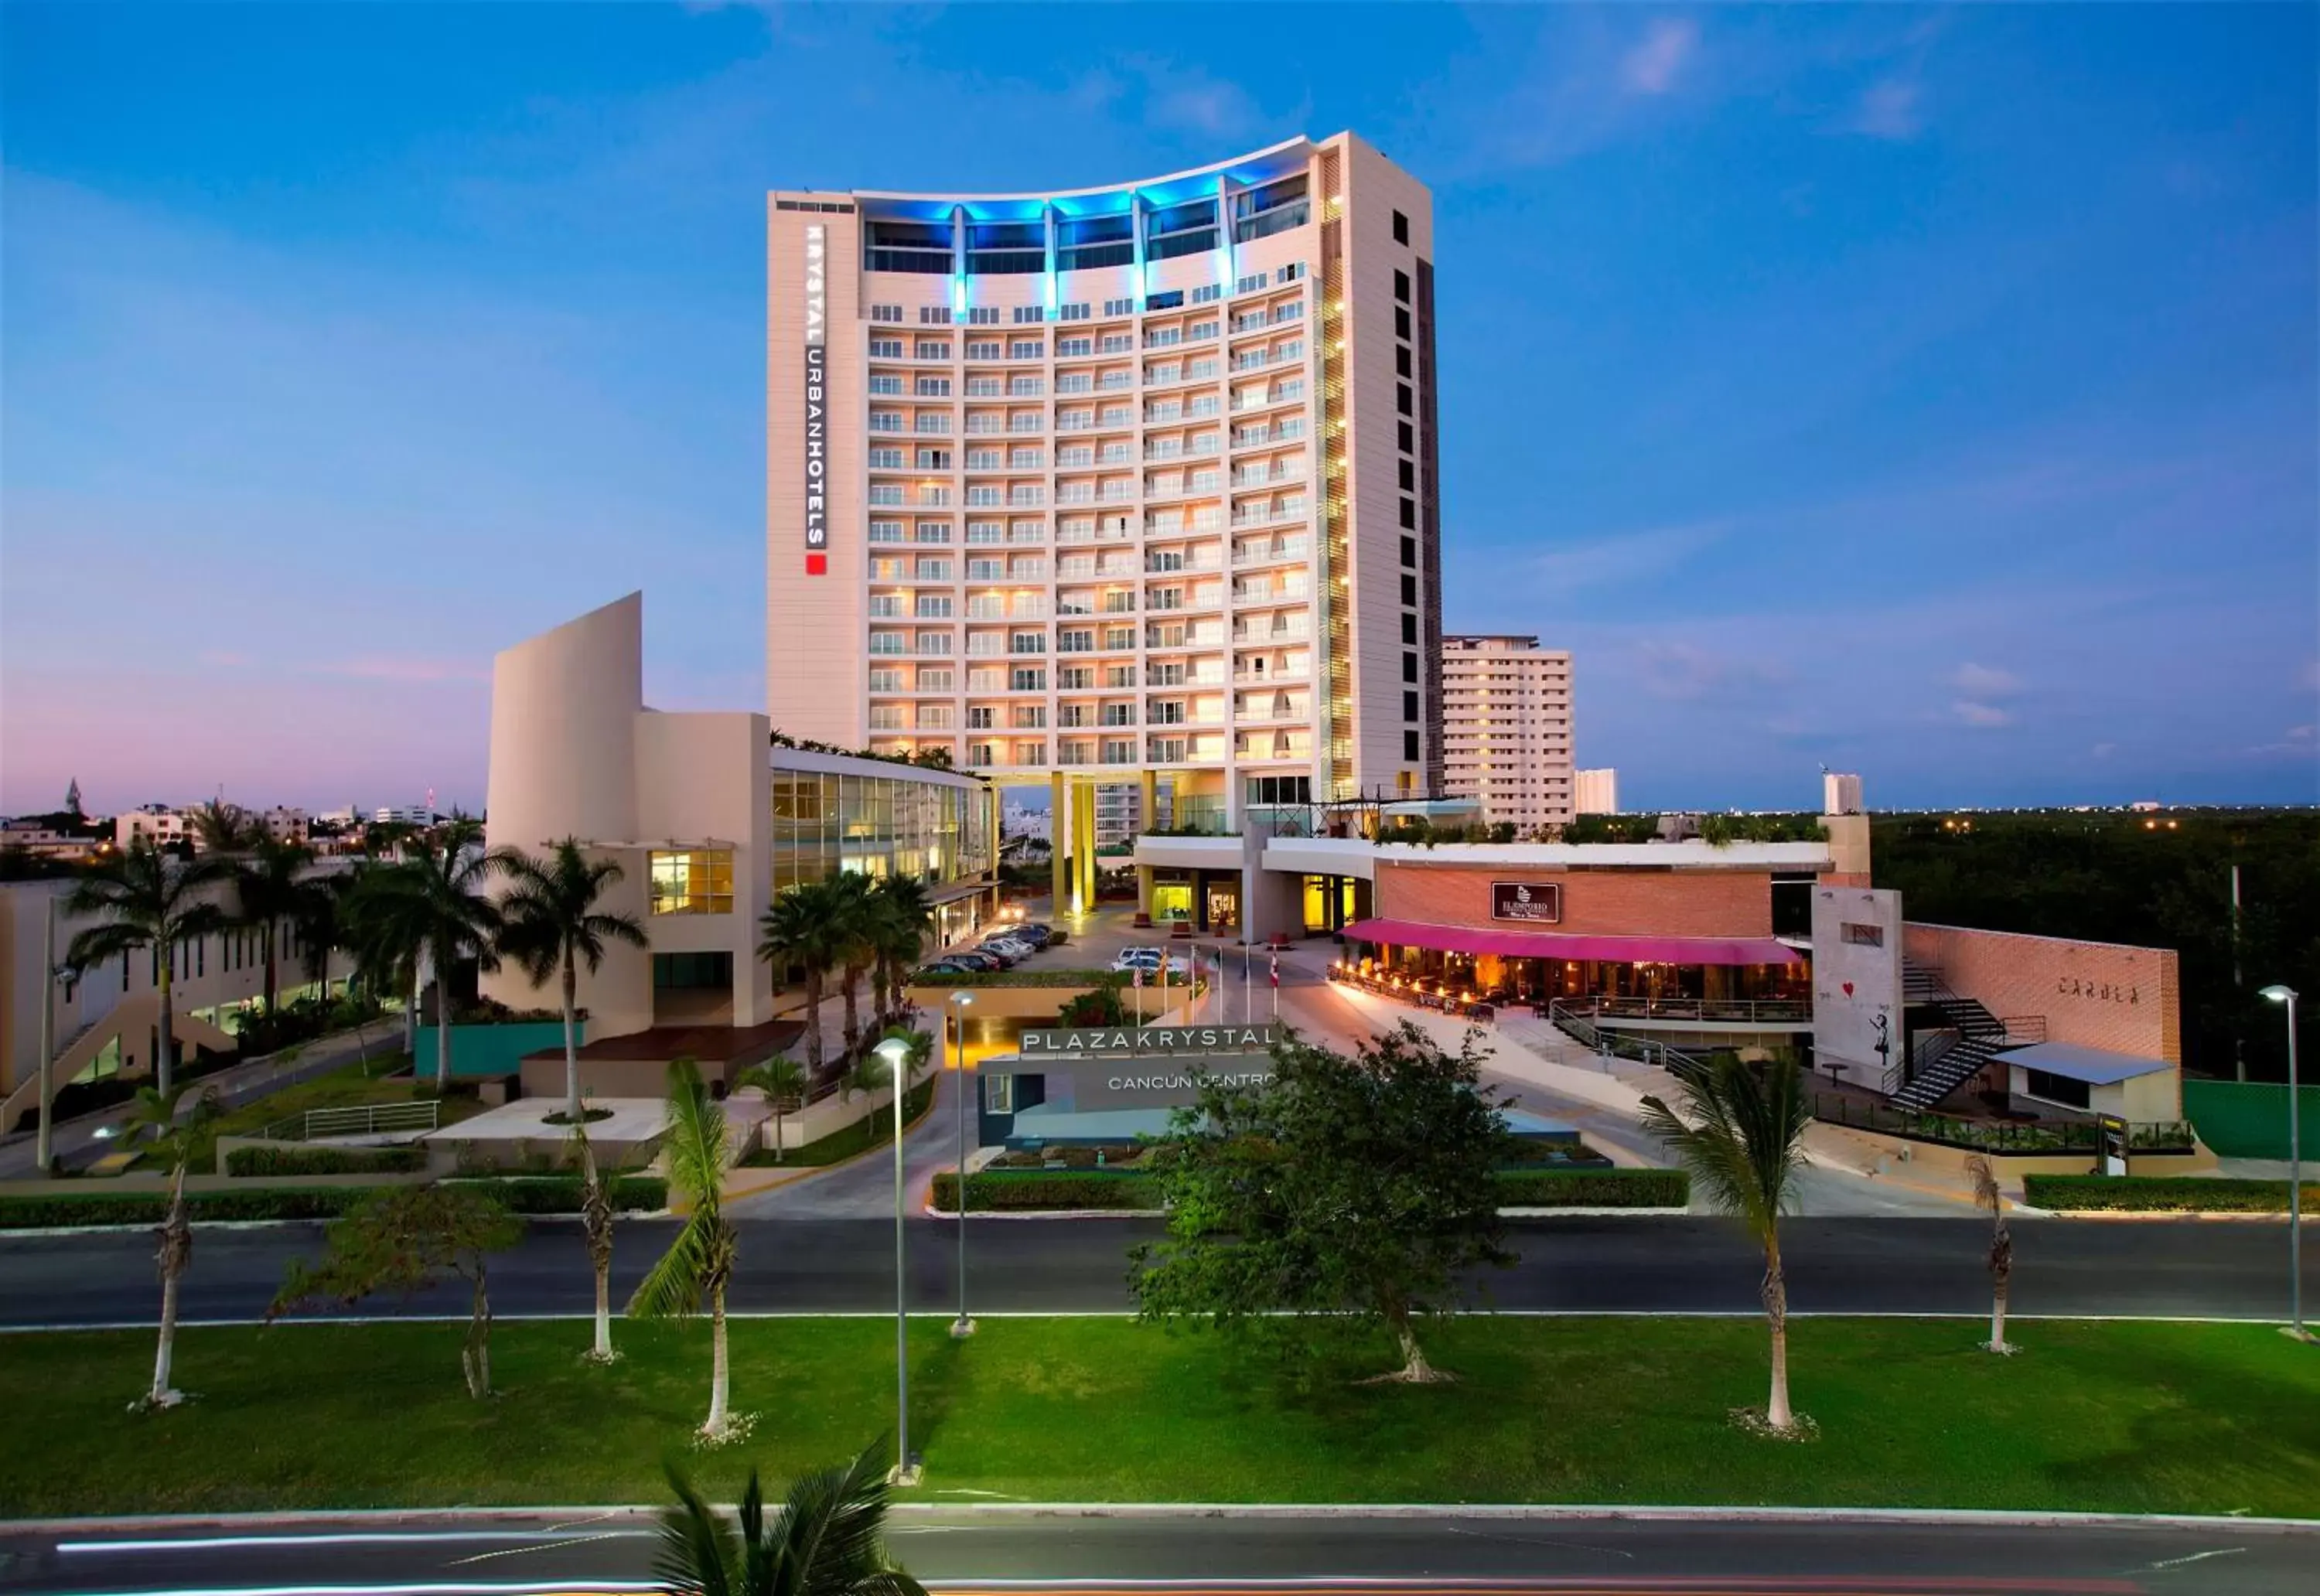 Facade/entrance, Property Building in Krystal Urban Cancun & Beach Club